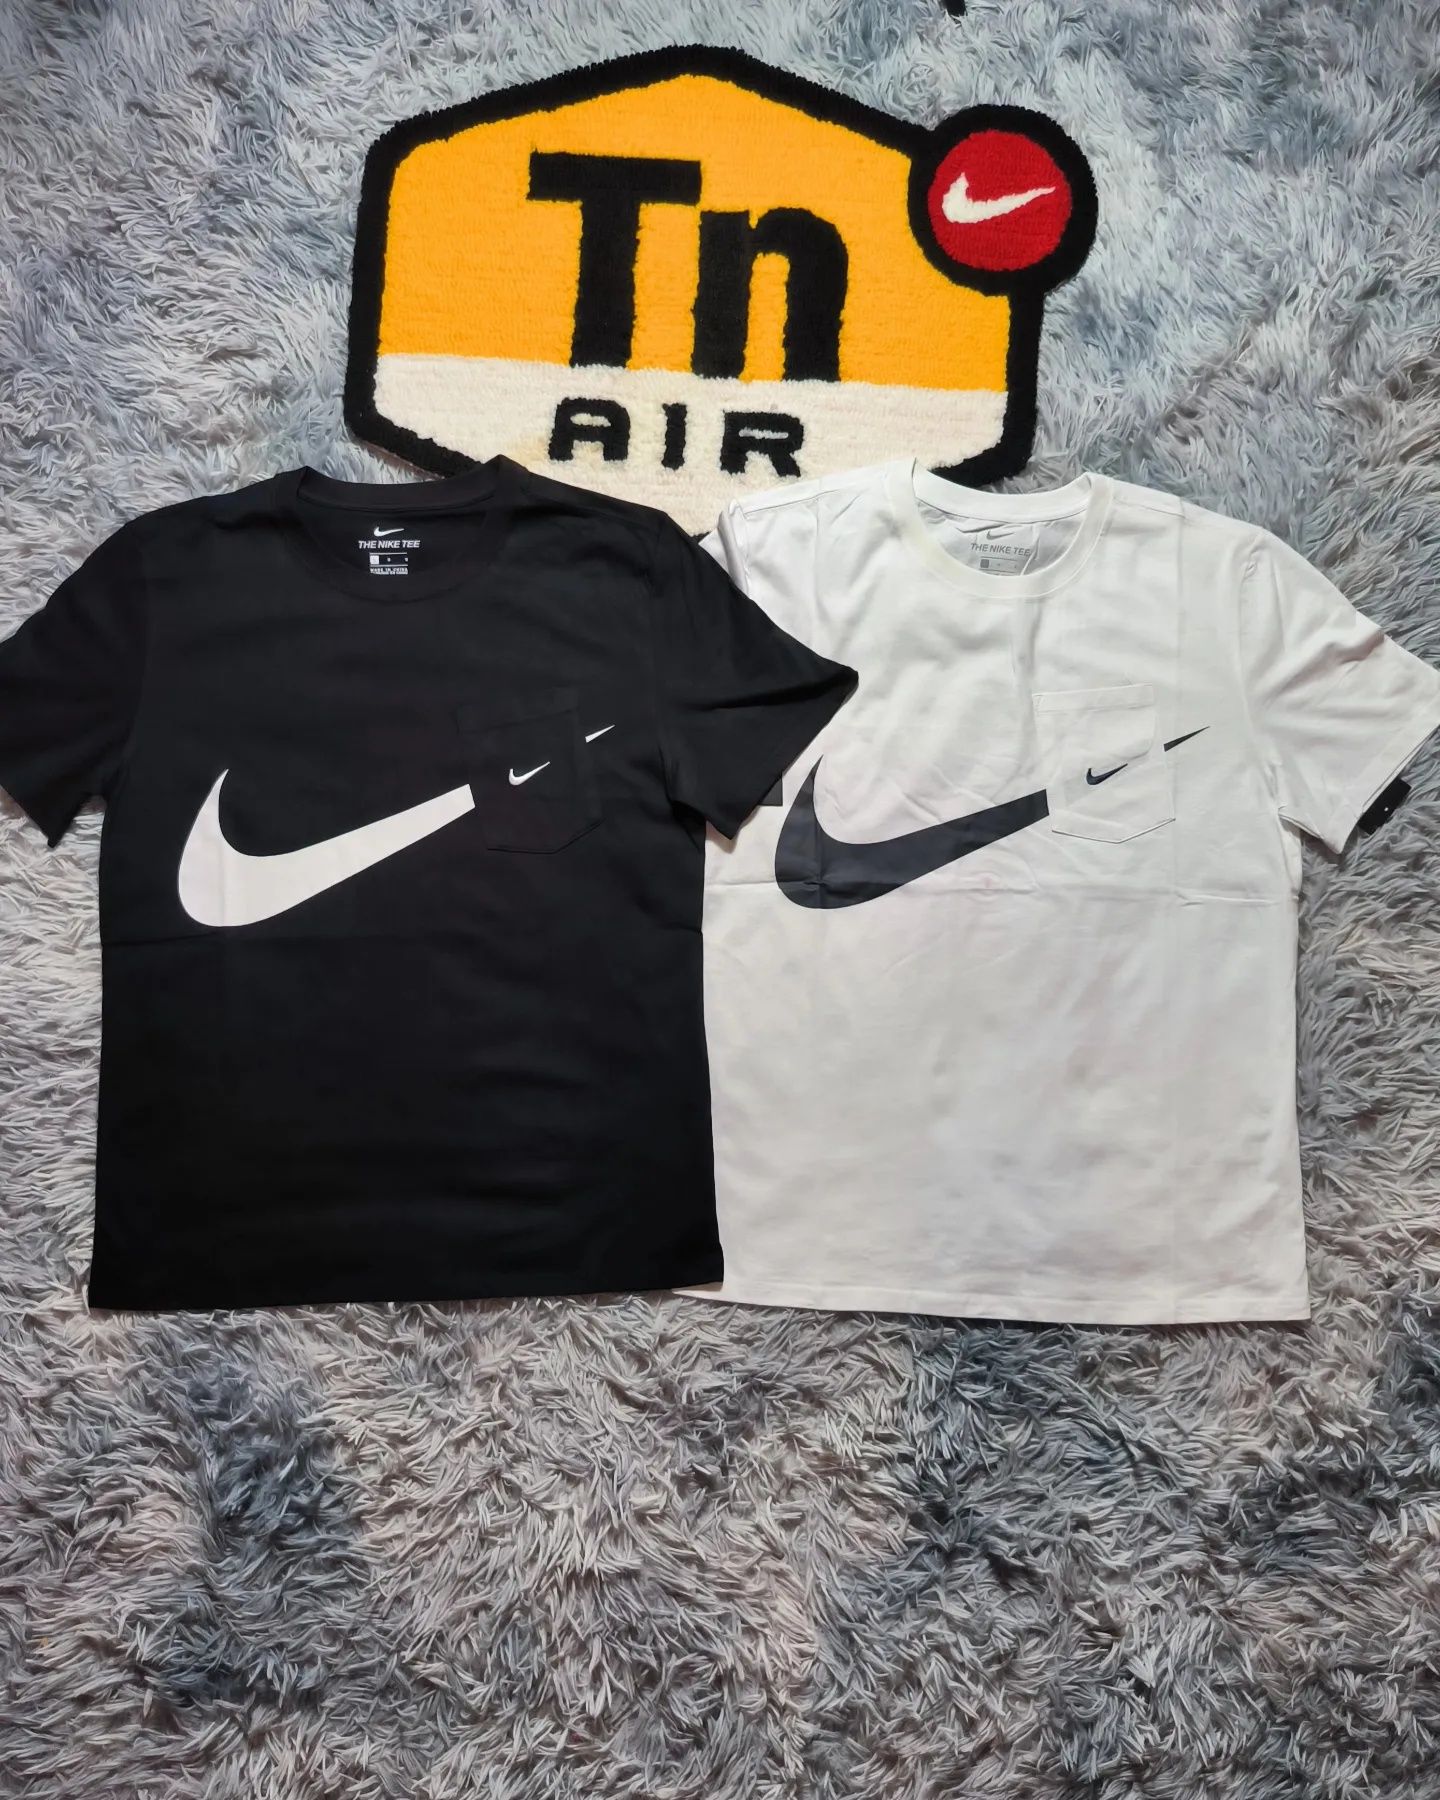 Футболка Nike+Подарунок

‼️Кількість обмежена‼️

Матеріал: Коттон
Ко